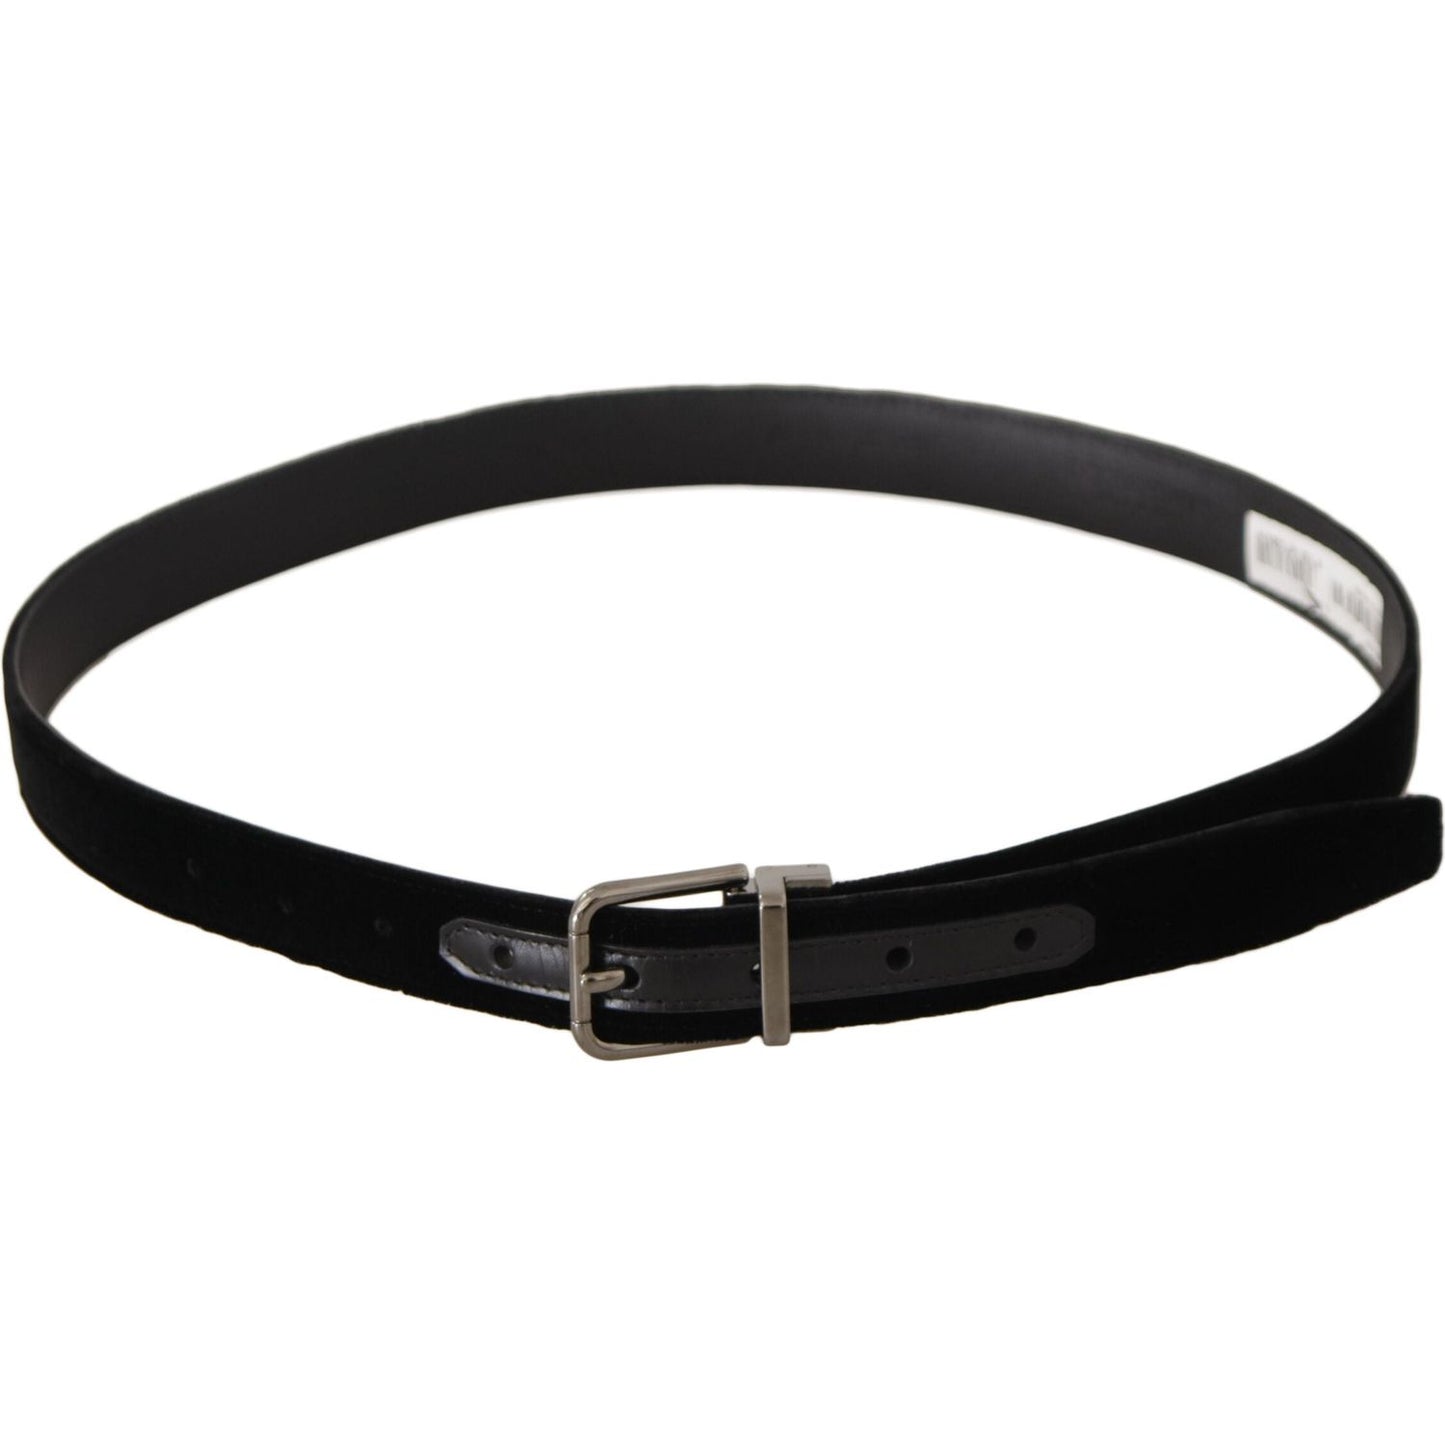 Dolce & Gabbana Elegant Velvet Designer Belt black-classic-velvet-logo-engraved-metal-buckle-belt IMG_0500-scaled-899533db-40a.jpg